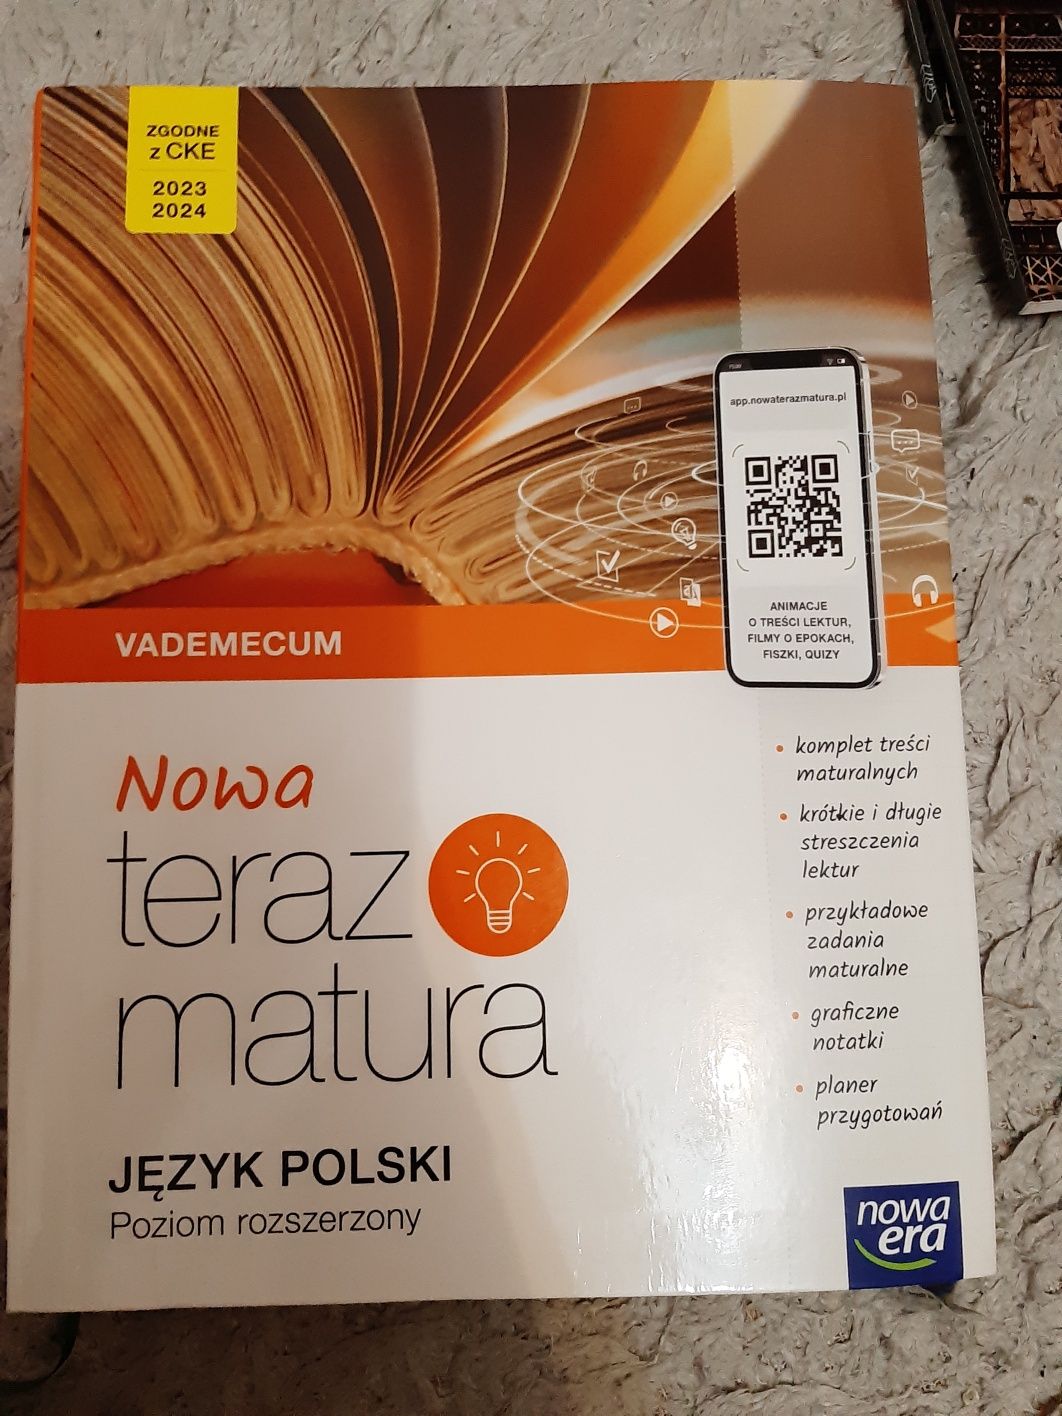 Vademecum z języka polskiego (Nowa Era)